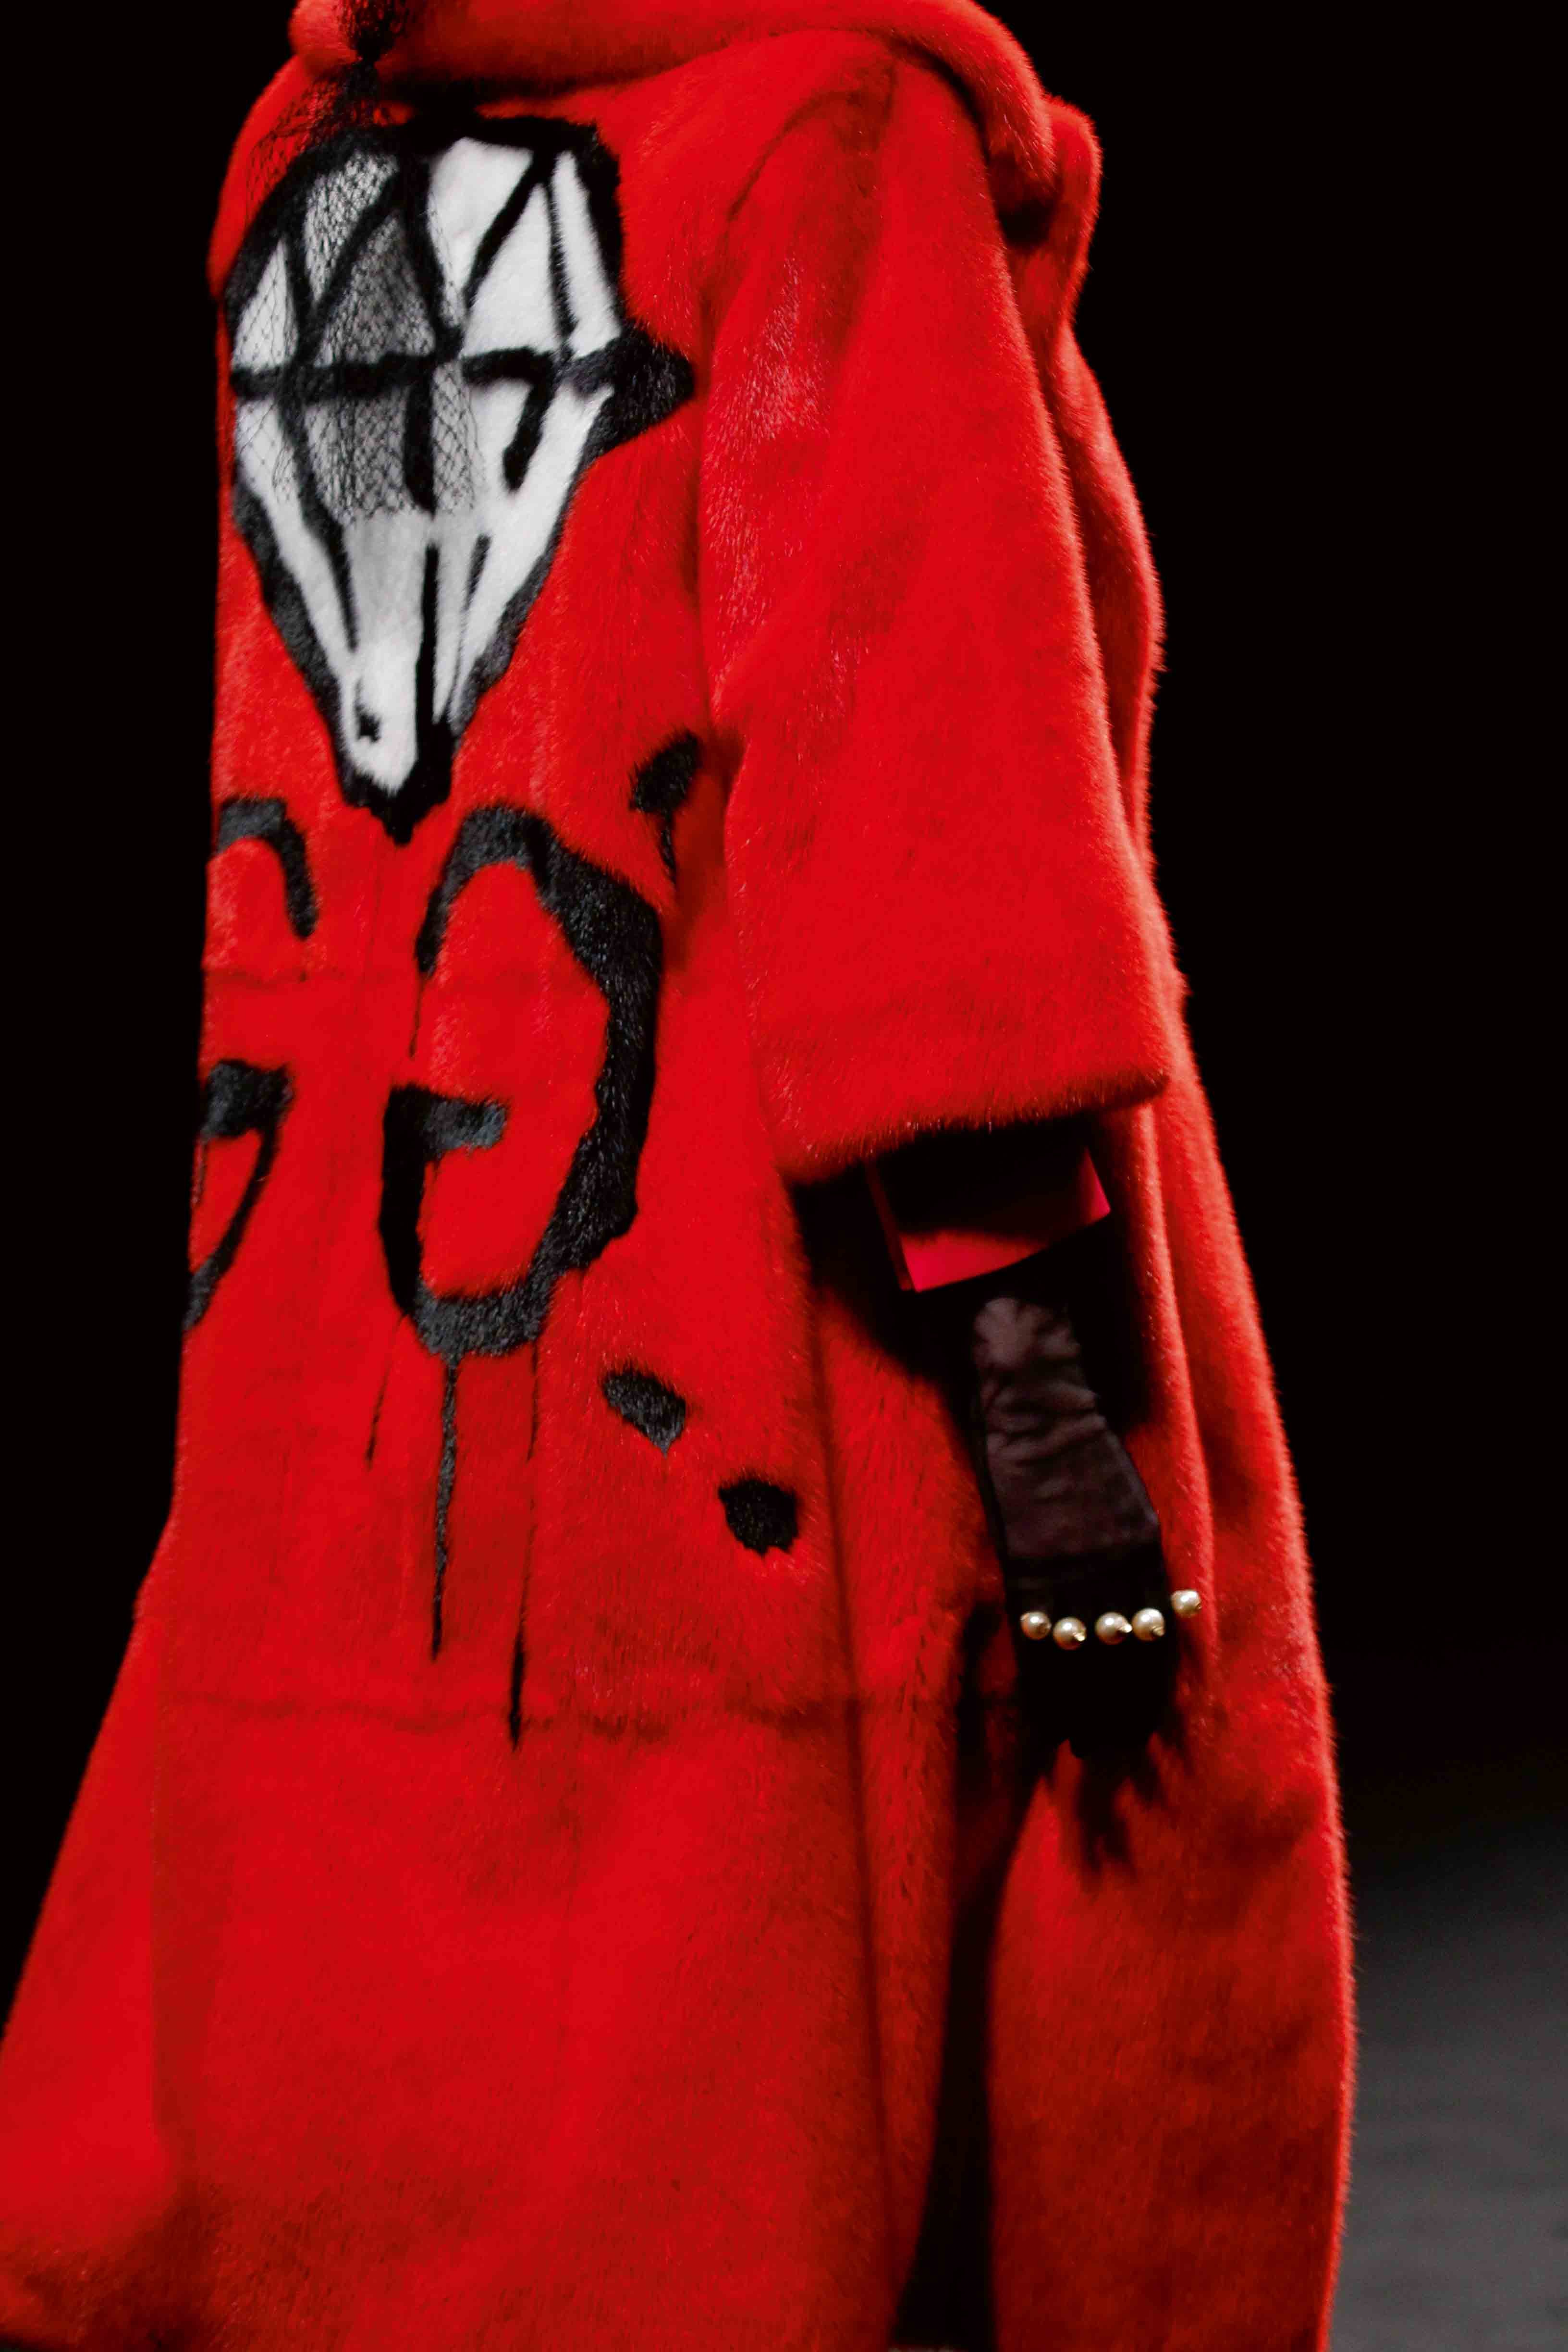 Iconique manteau rouge griffé d’un double G signé de l’artiste GucciGhost, alias Trevor Andrew.